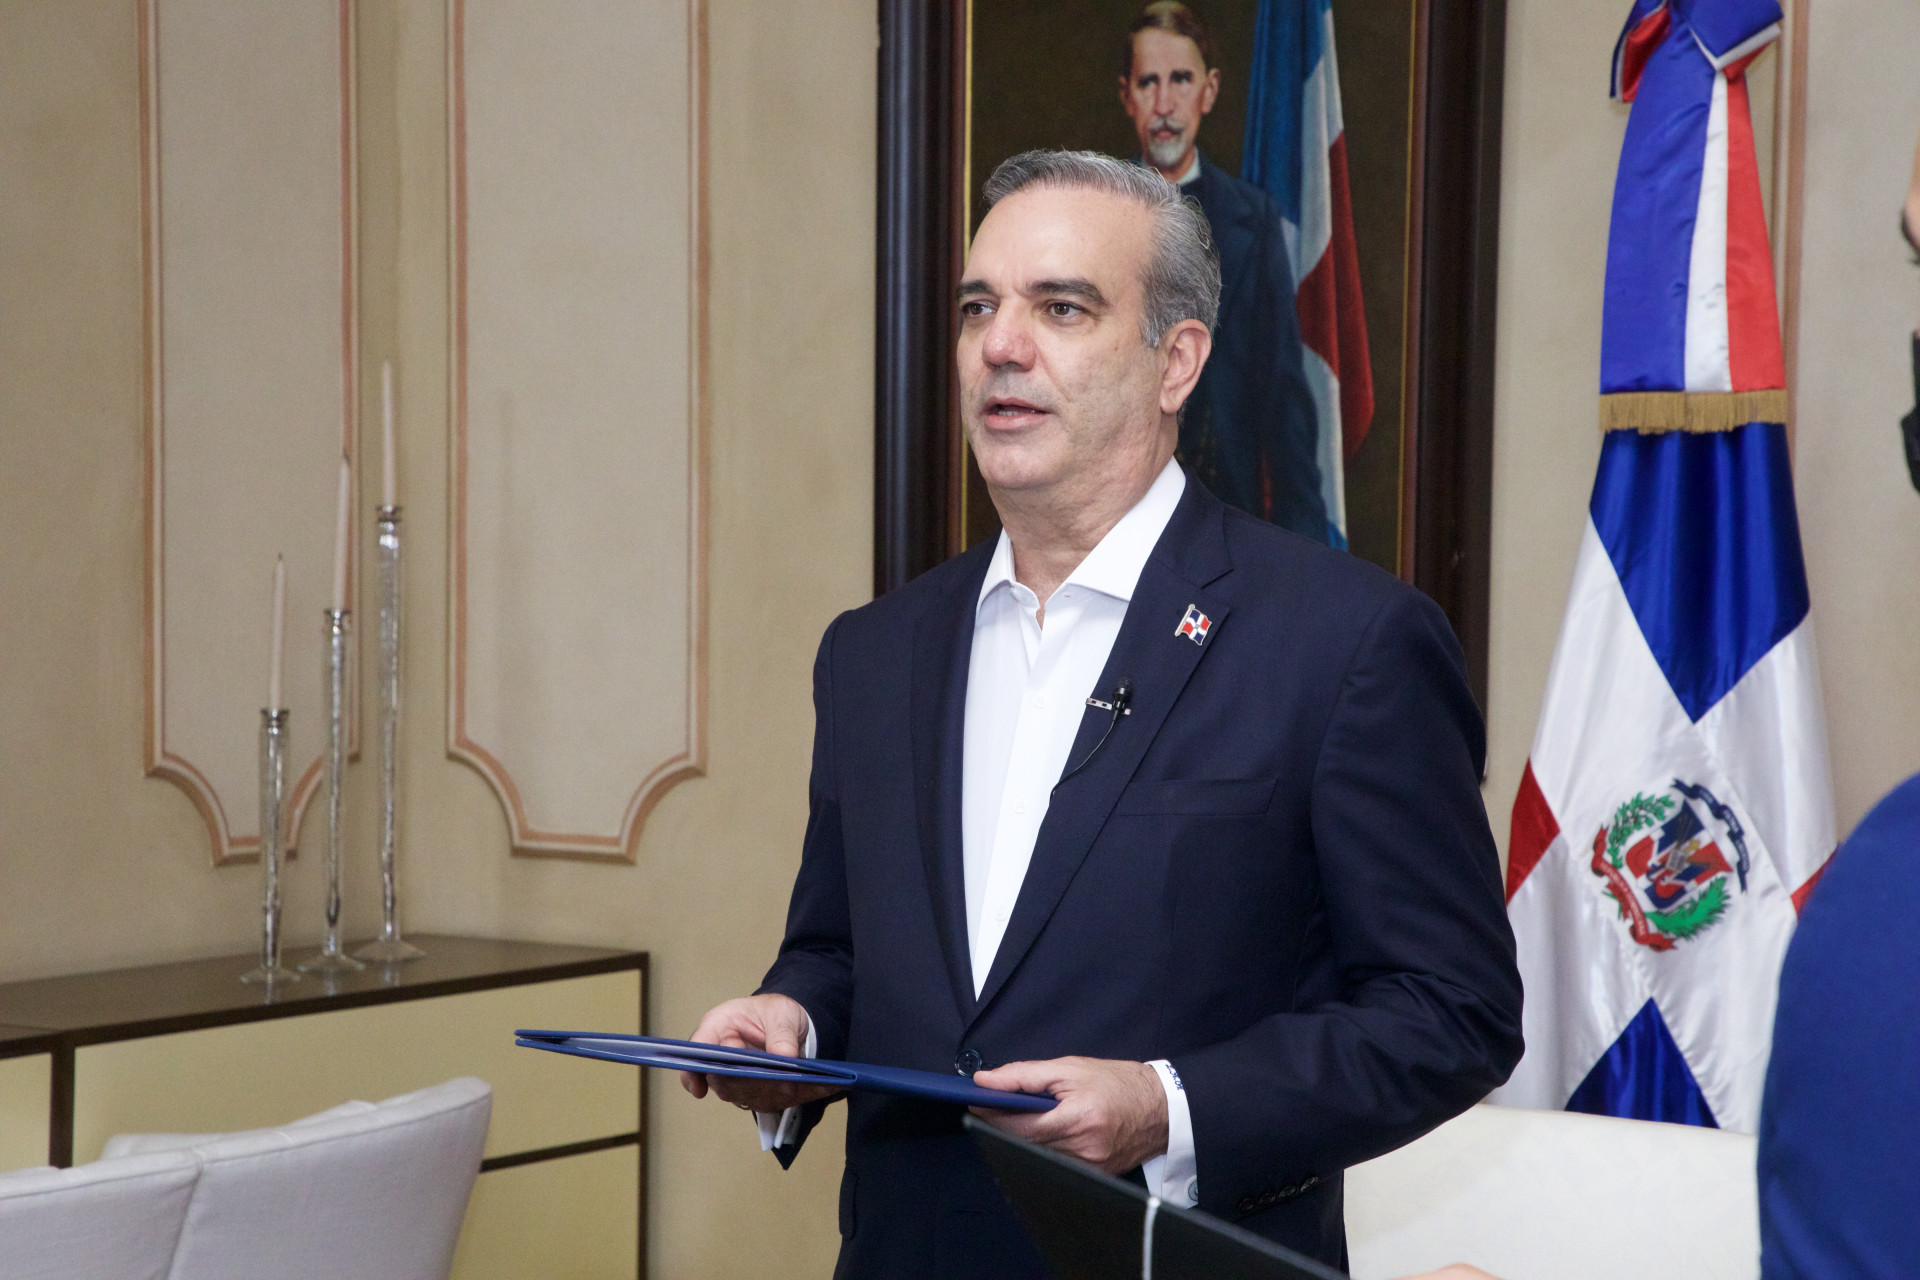 REPÚBLICA DOMINICANA: Presidente Luis Abinader recibe cartas credenciales de siete nuevos embajadores en ceremonia virtual